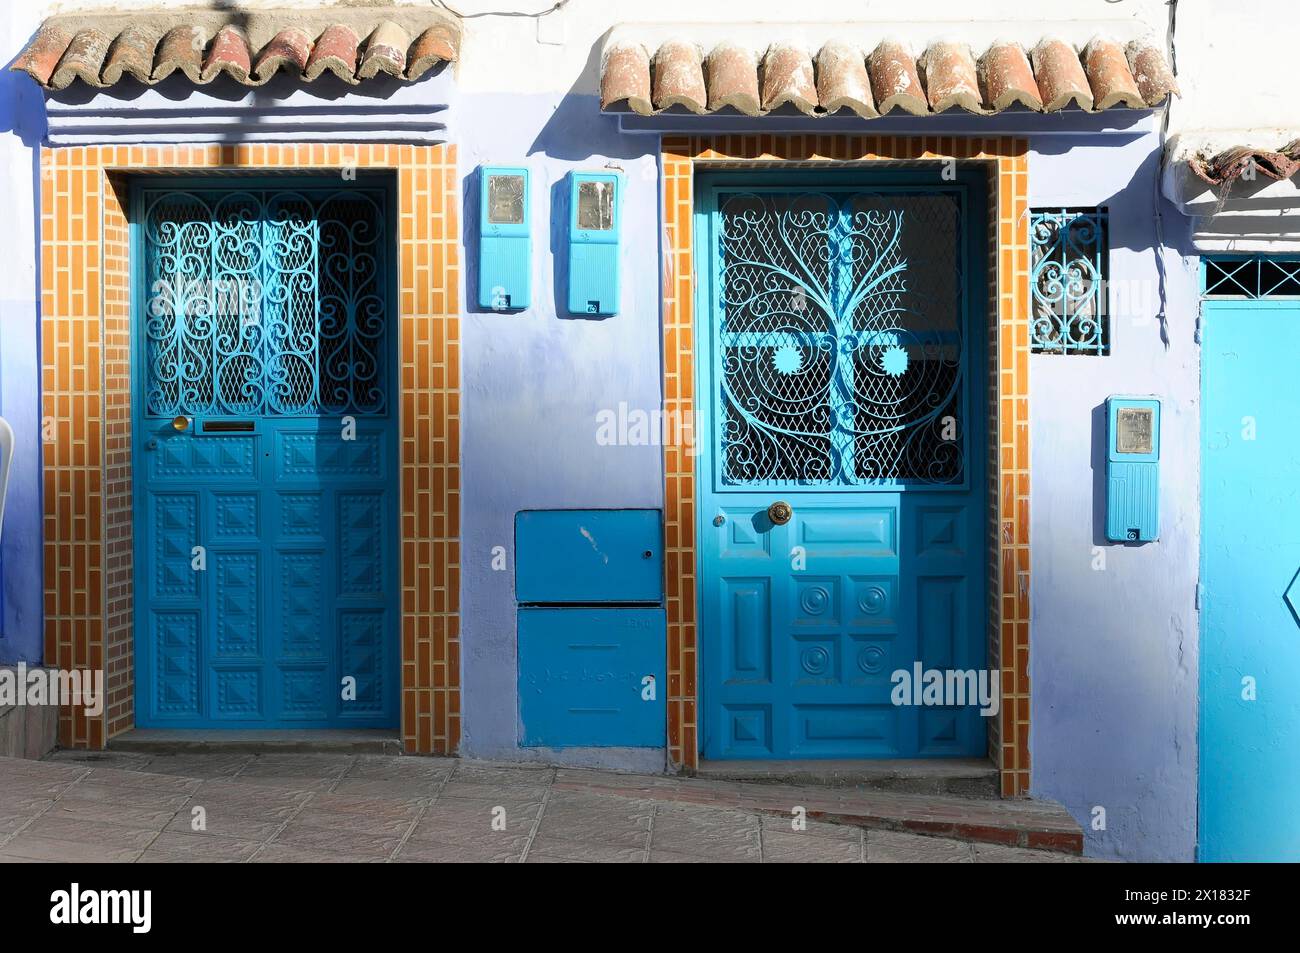 Chefchaouen, Un bâtiment marocain aux portes et volets bleus et à la façade blanche et bleue, Chefchaouen, Maroc Banque D'Images